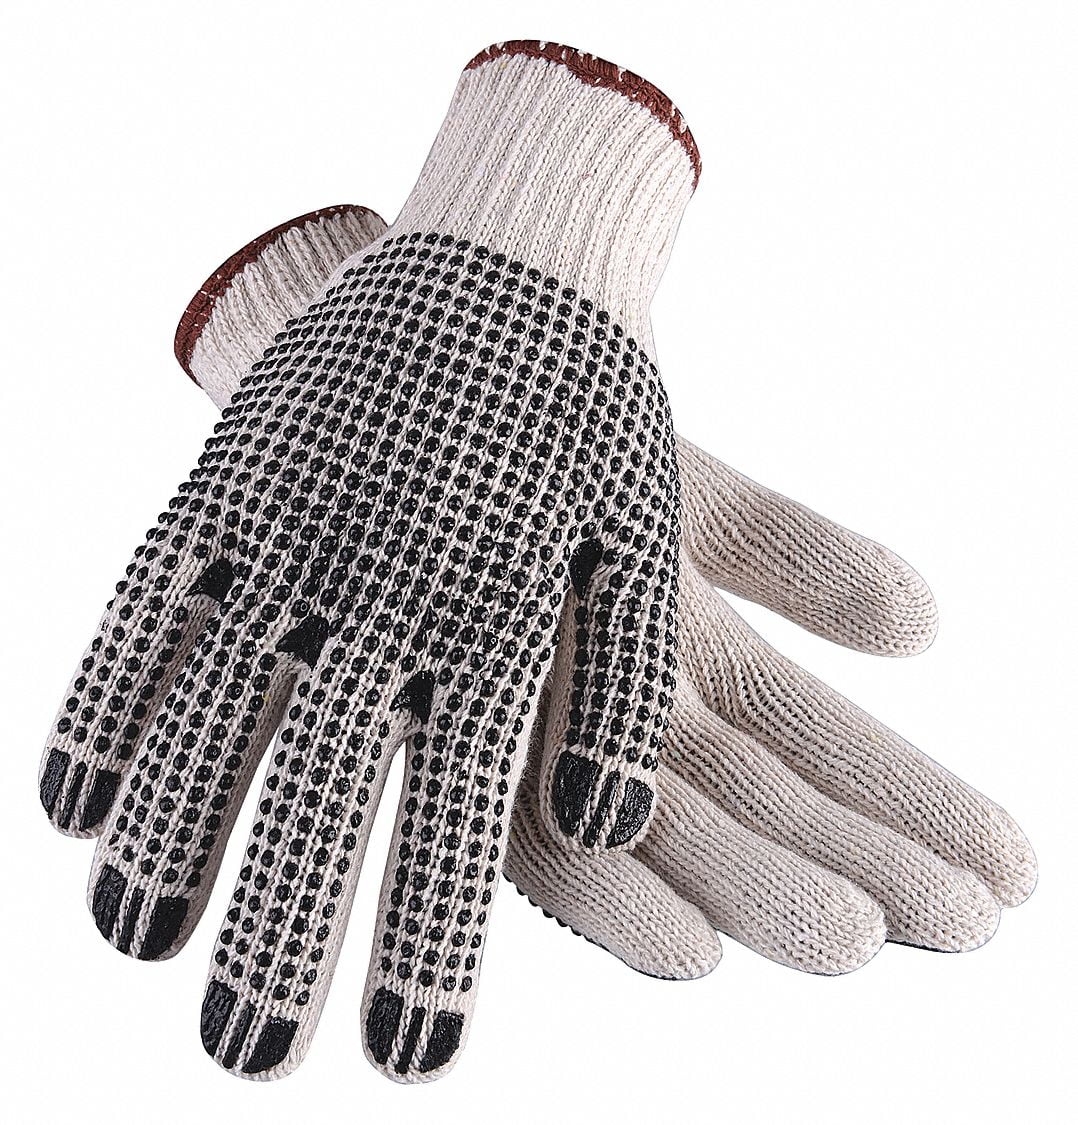 CONDOR 2UTZ4 Knit Gloves,Beige,L,PR PK 12 